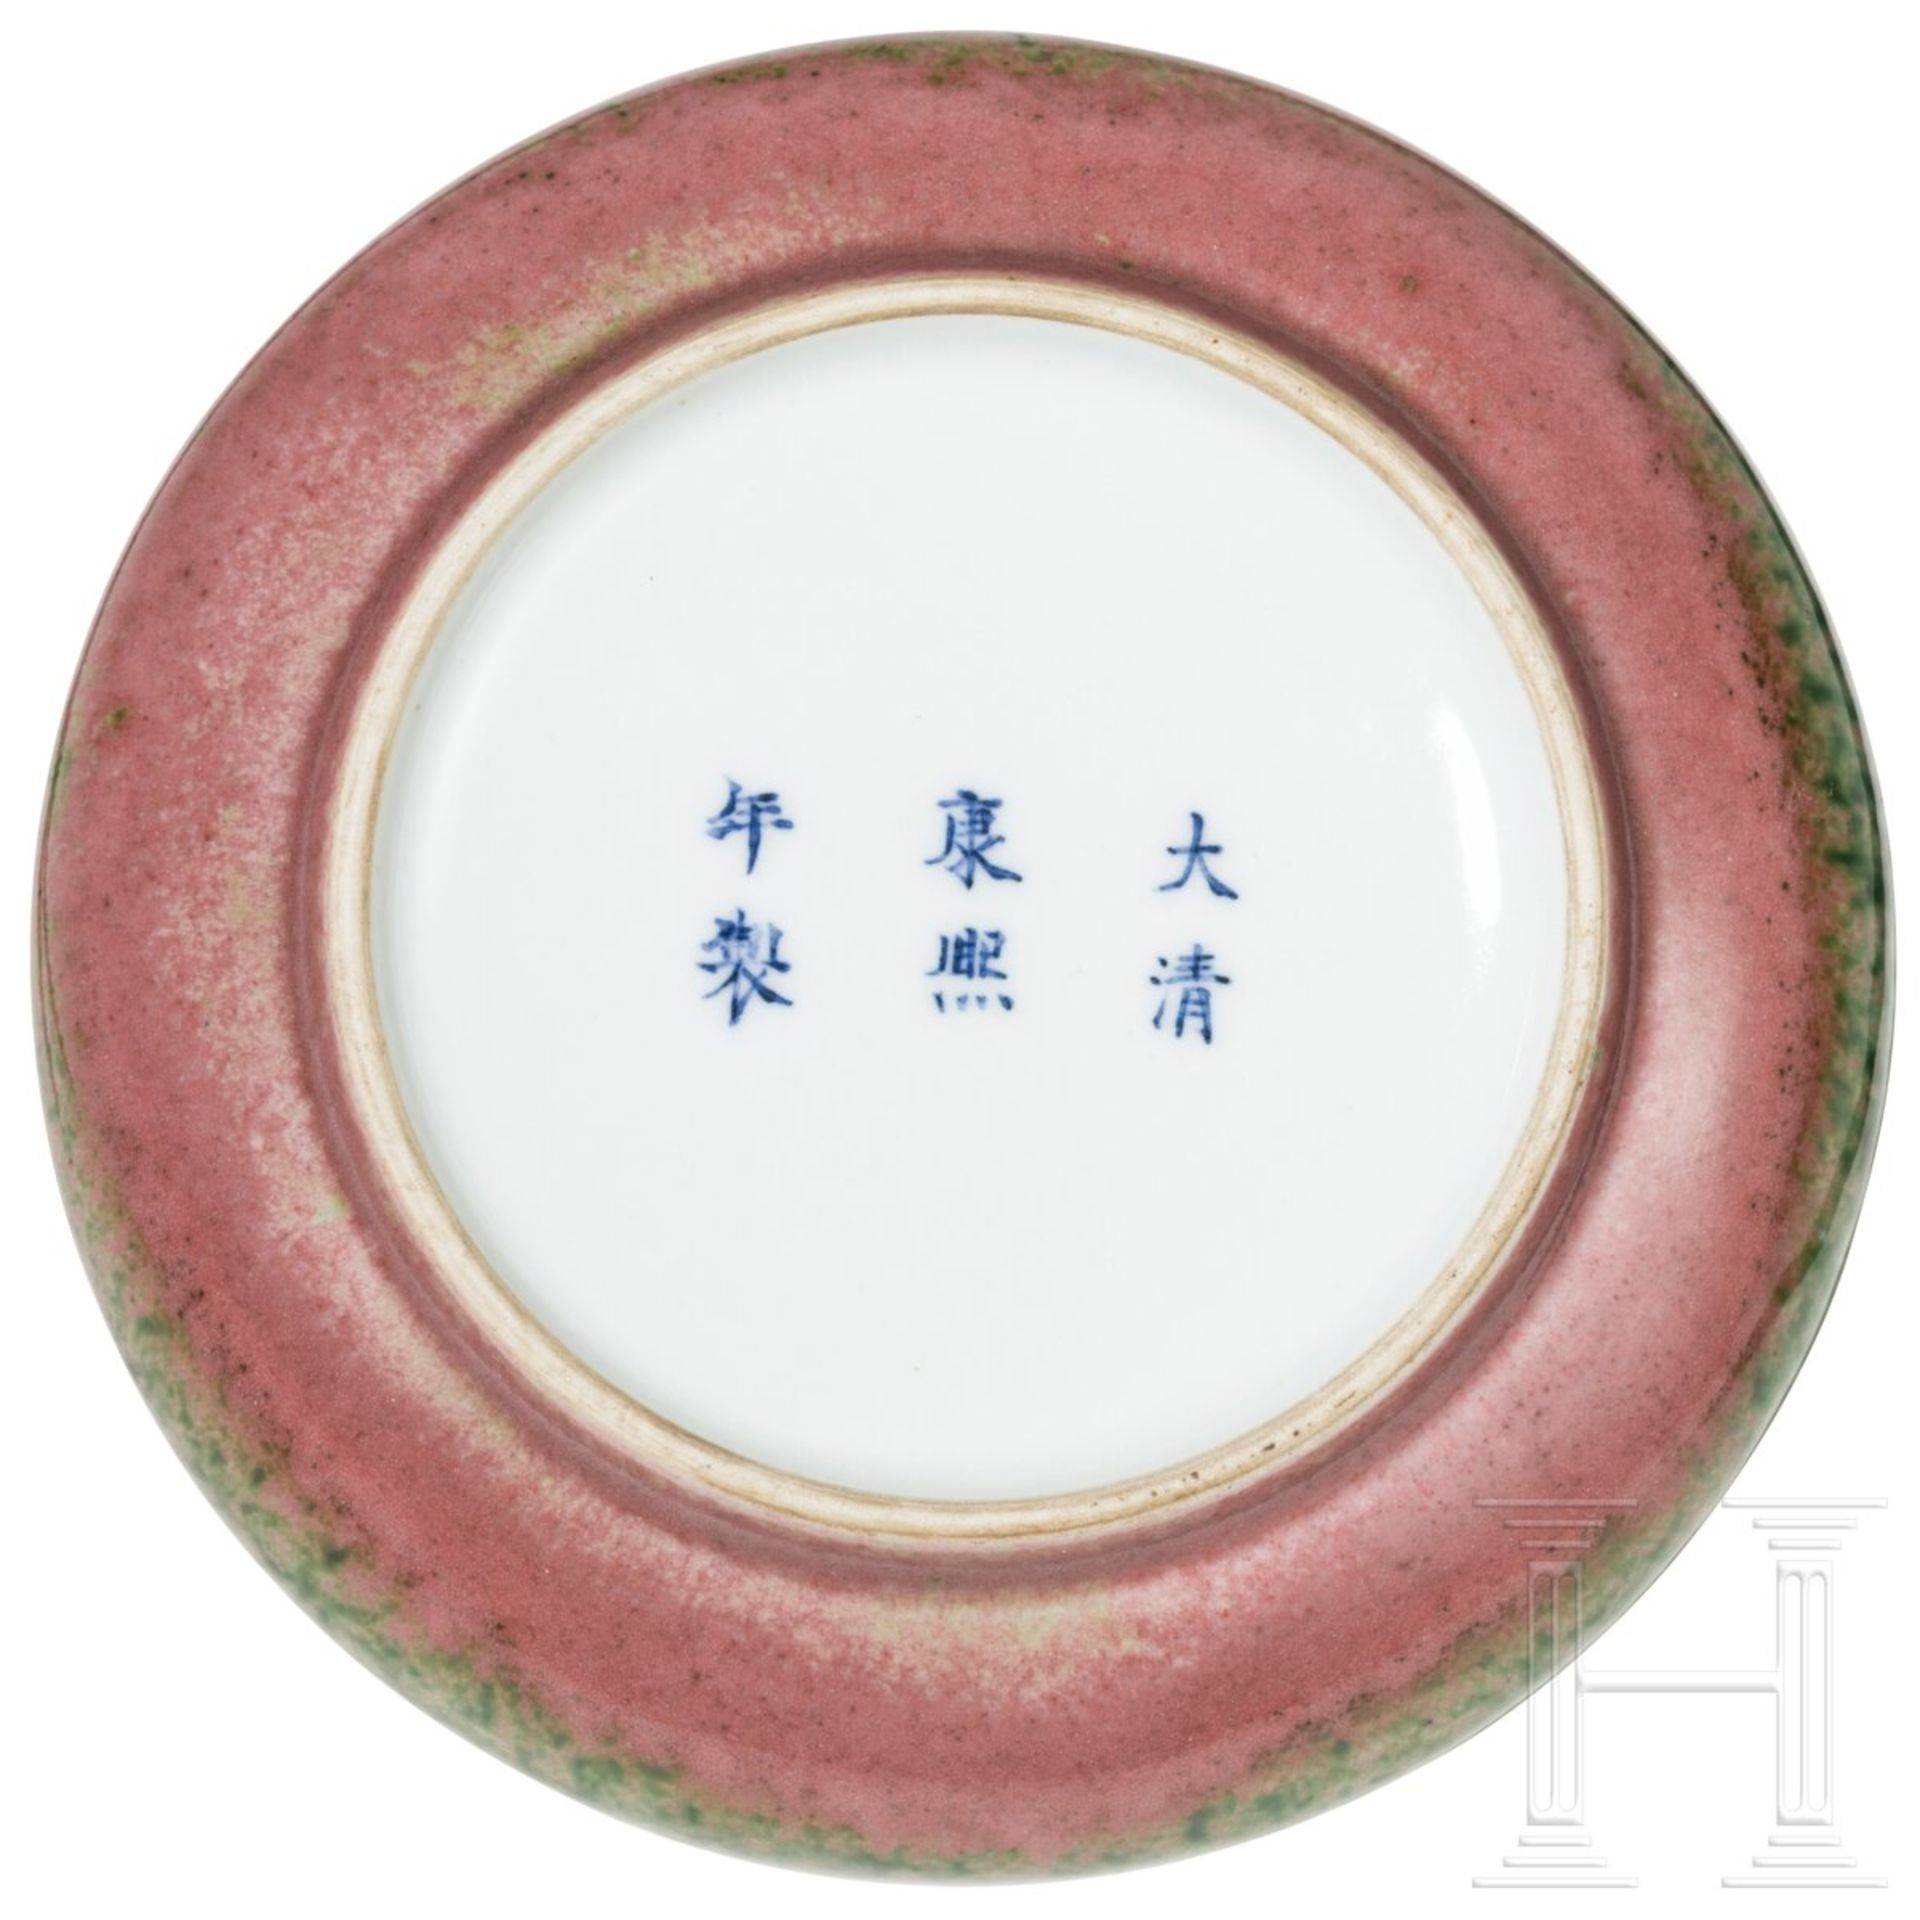 Pfirsichblütenfarben glasierte Pinselwaschschale mit Kangxi-Marke, China, wahrscheinlich aus dieser  - Bild 5 aus 21